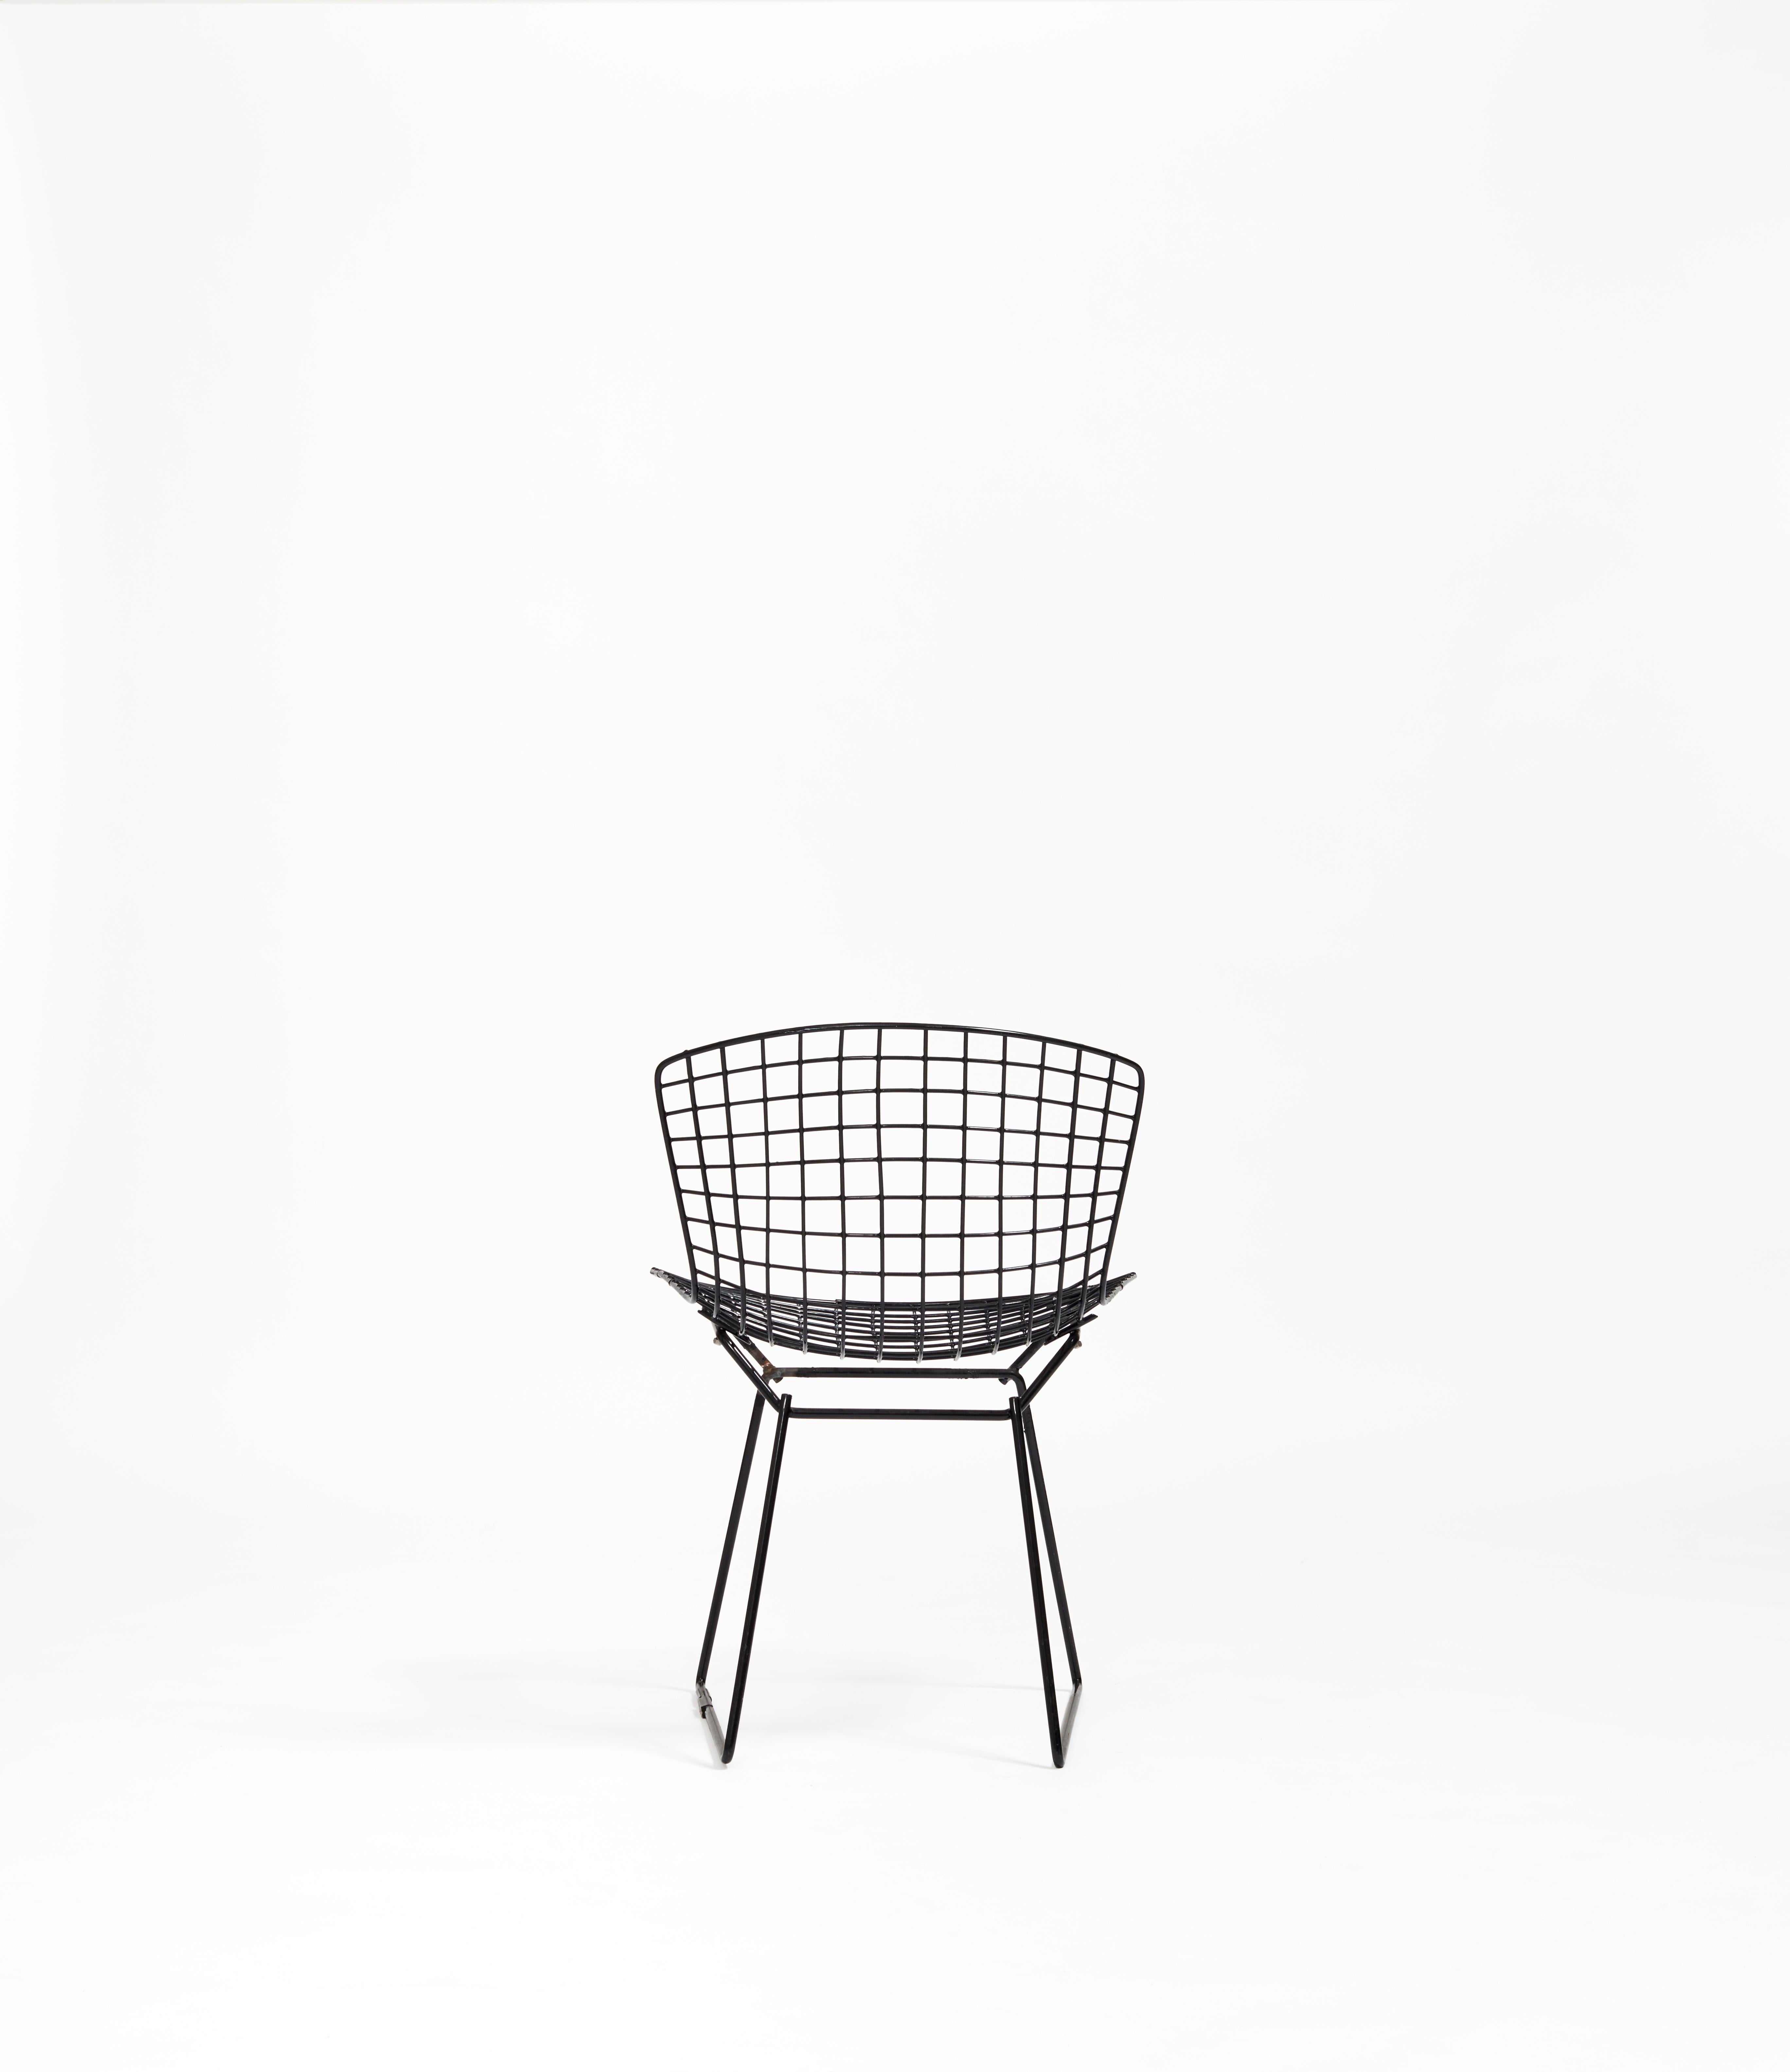 Bertoias Beistellstuhl ist definitiv ein ikonischer Ausdruck der Sensibilität der Mitte des Jahrhunderts, wobei der Schwerpunkt auf dem Verhältnis zwischen Ästhetik und Haltbarkeit liegt. Seine Silhouette ist die erste Iteration eines Stils, der in